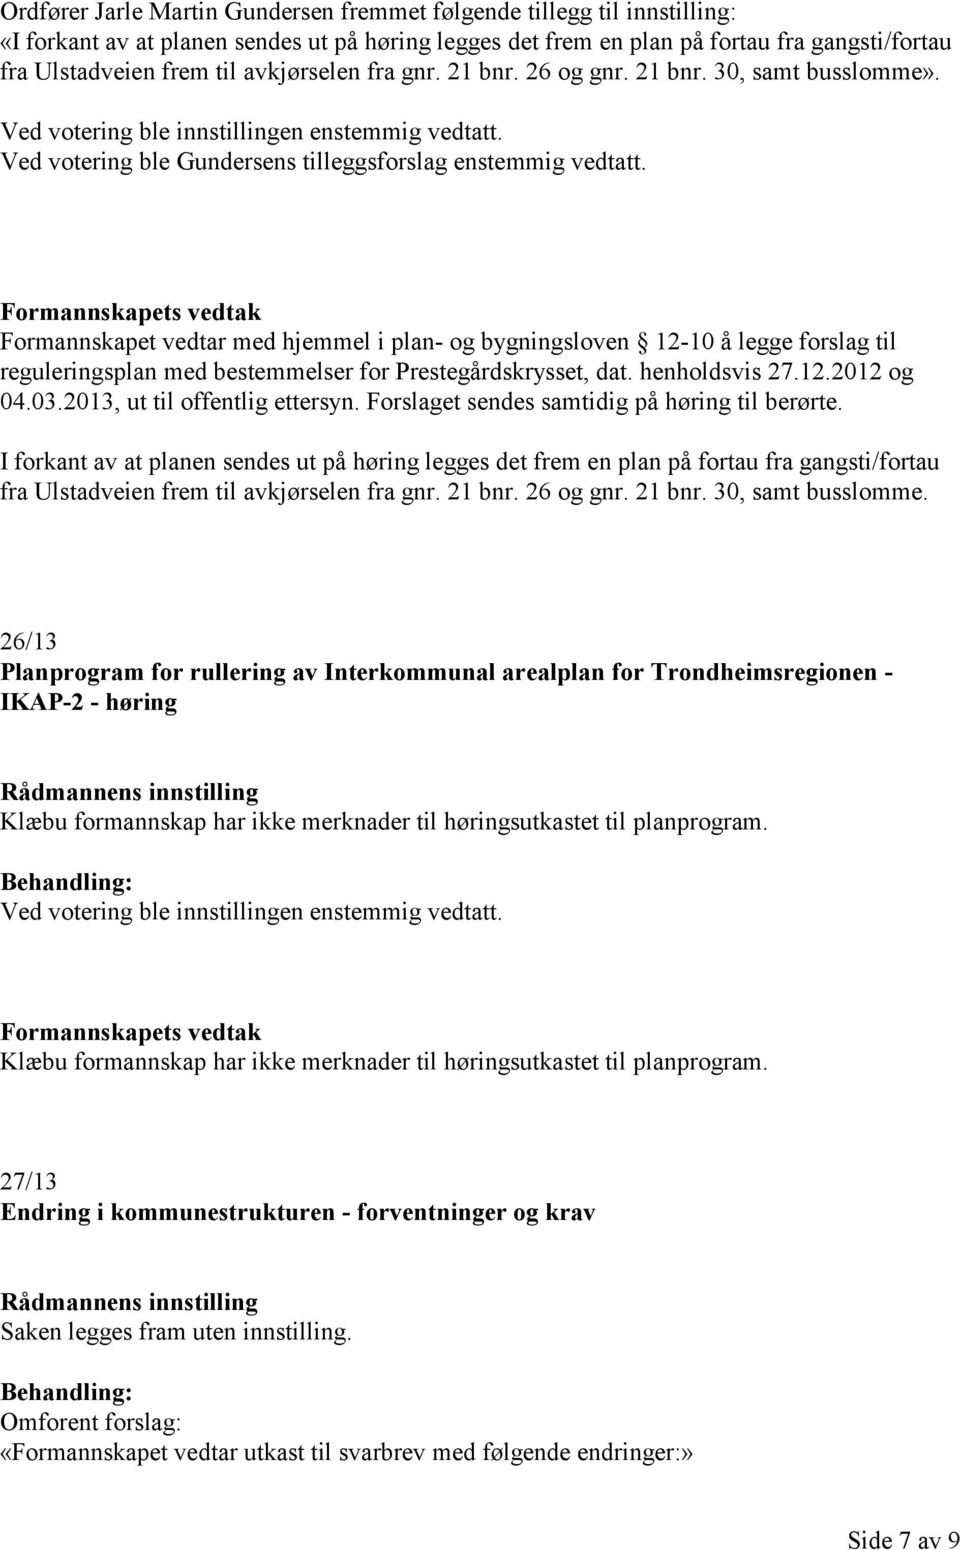 Formannskapets vedtak Formannskapet vedtar med hjemmel i plan- og bygningsloven 12-10 å legge forslag til reguleringsplan med bestemmelser for Prestegårdskrysset, dat. henholdsvis 27.12.2012 og 04.03.